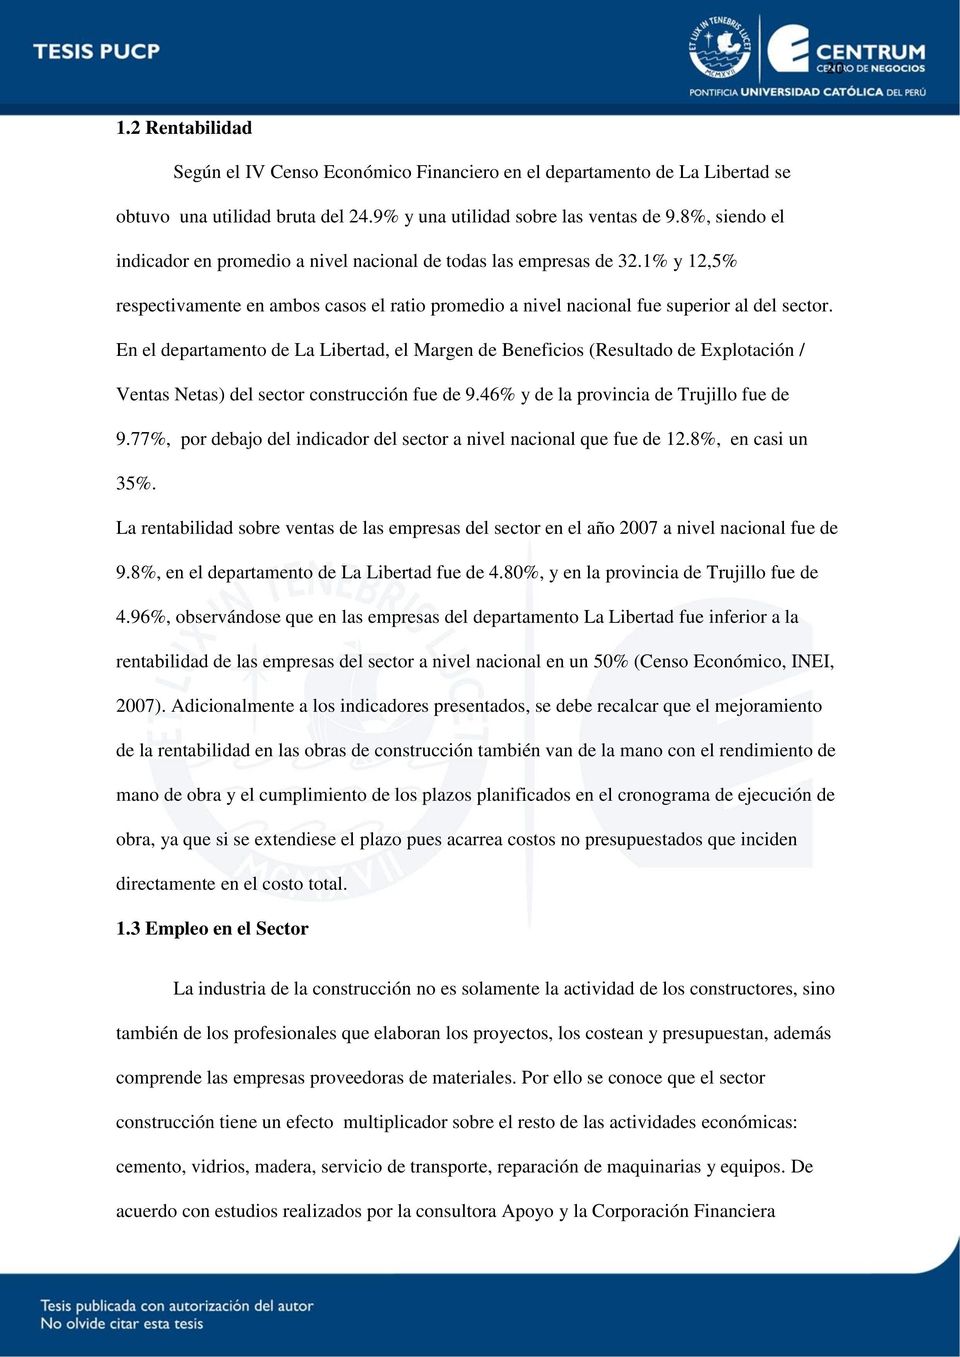 En el departamento de La Libertad, el Margen de Beneficios (Resultado de Explotación / Ventas Netas) del sector construcción fue de 9.46% y de la provincia de Trujillo fue de 9.